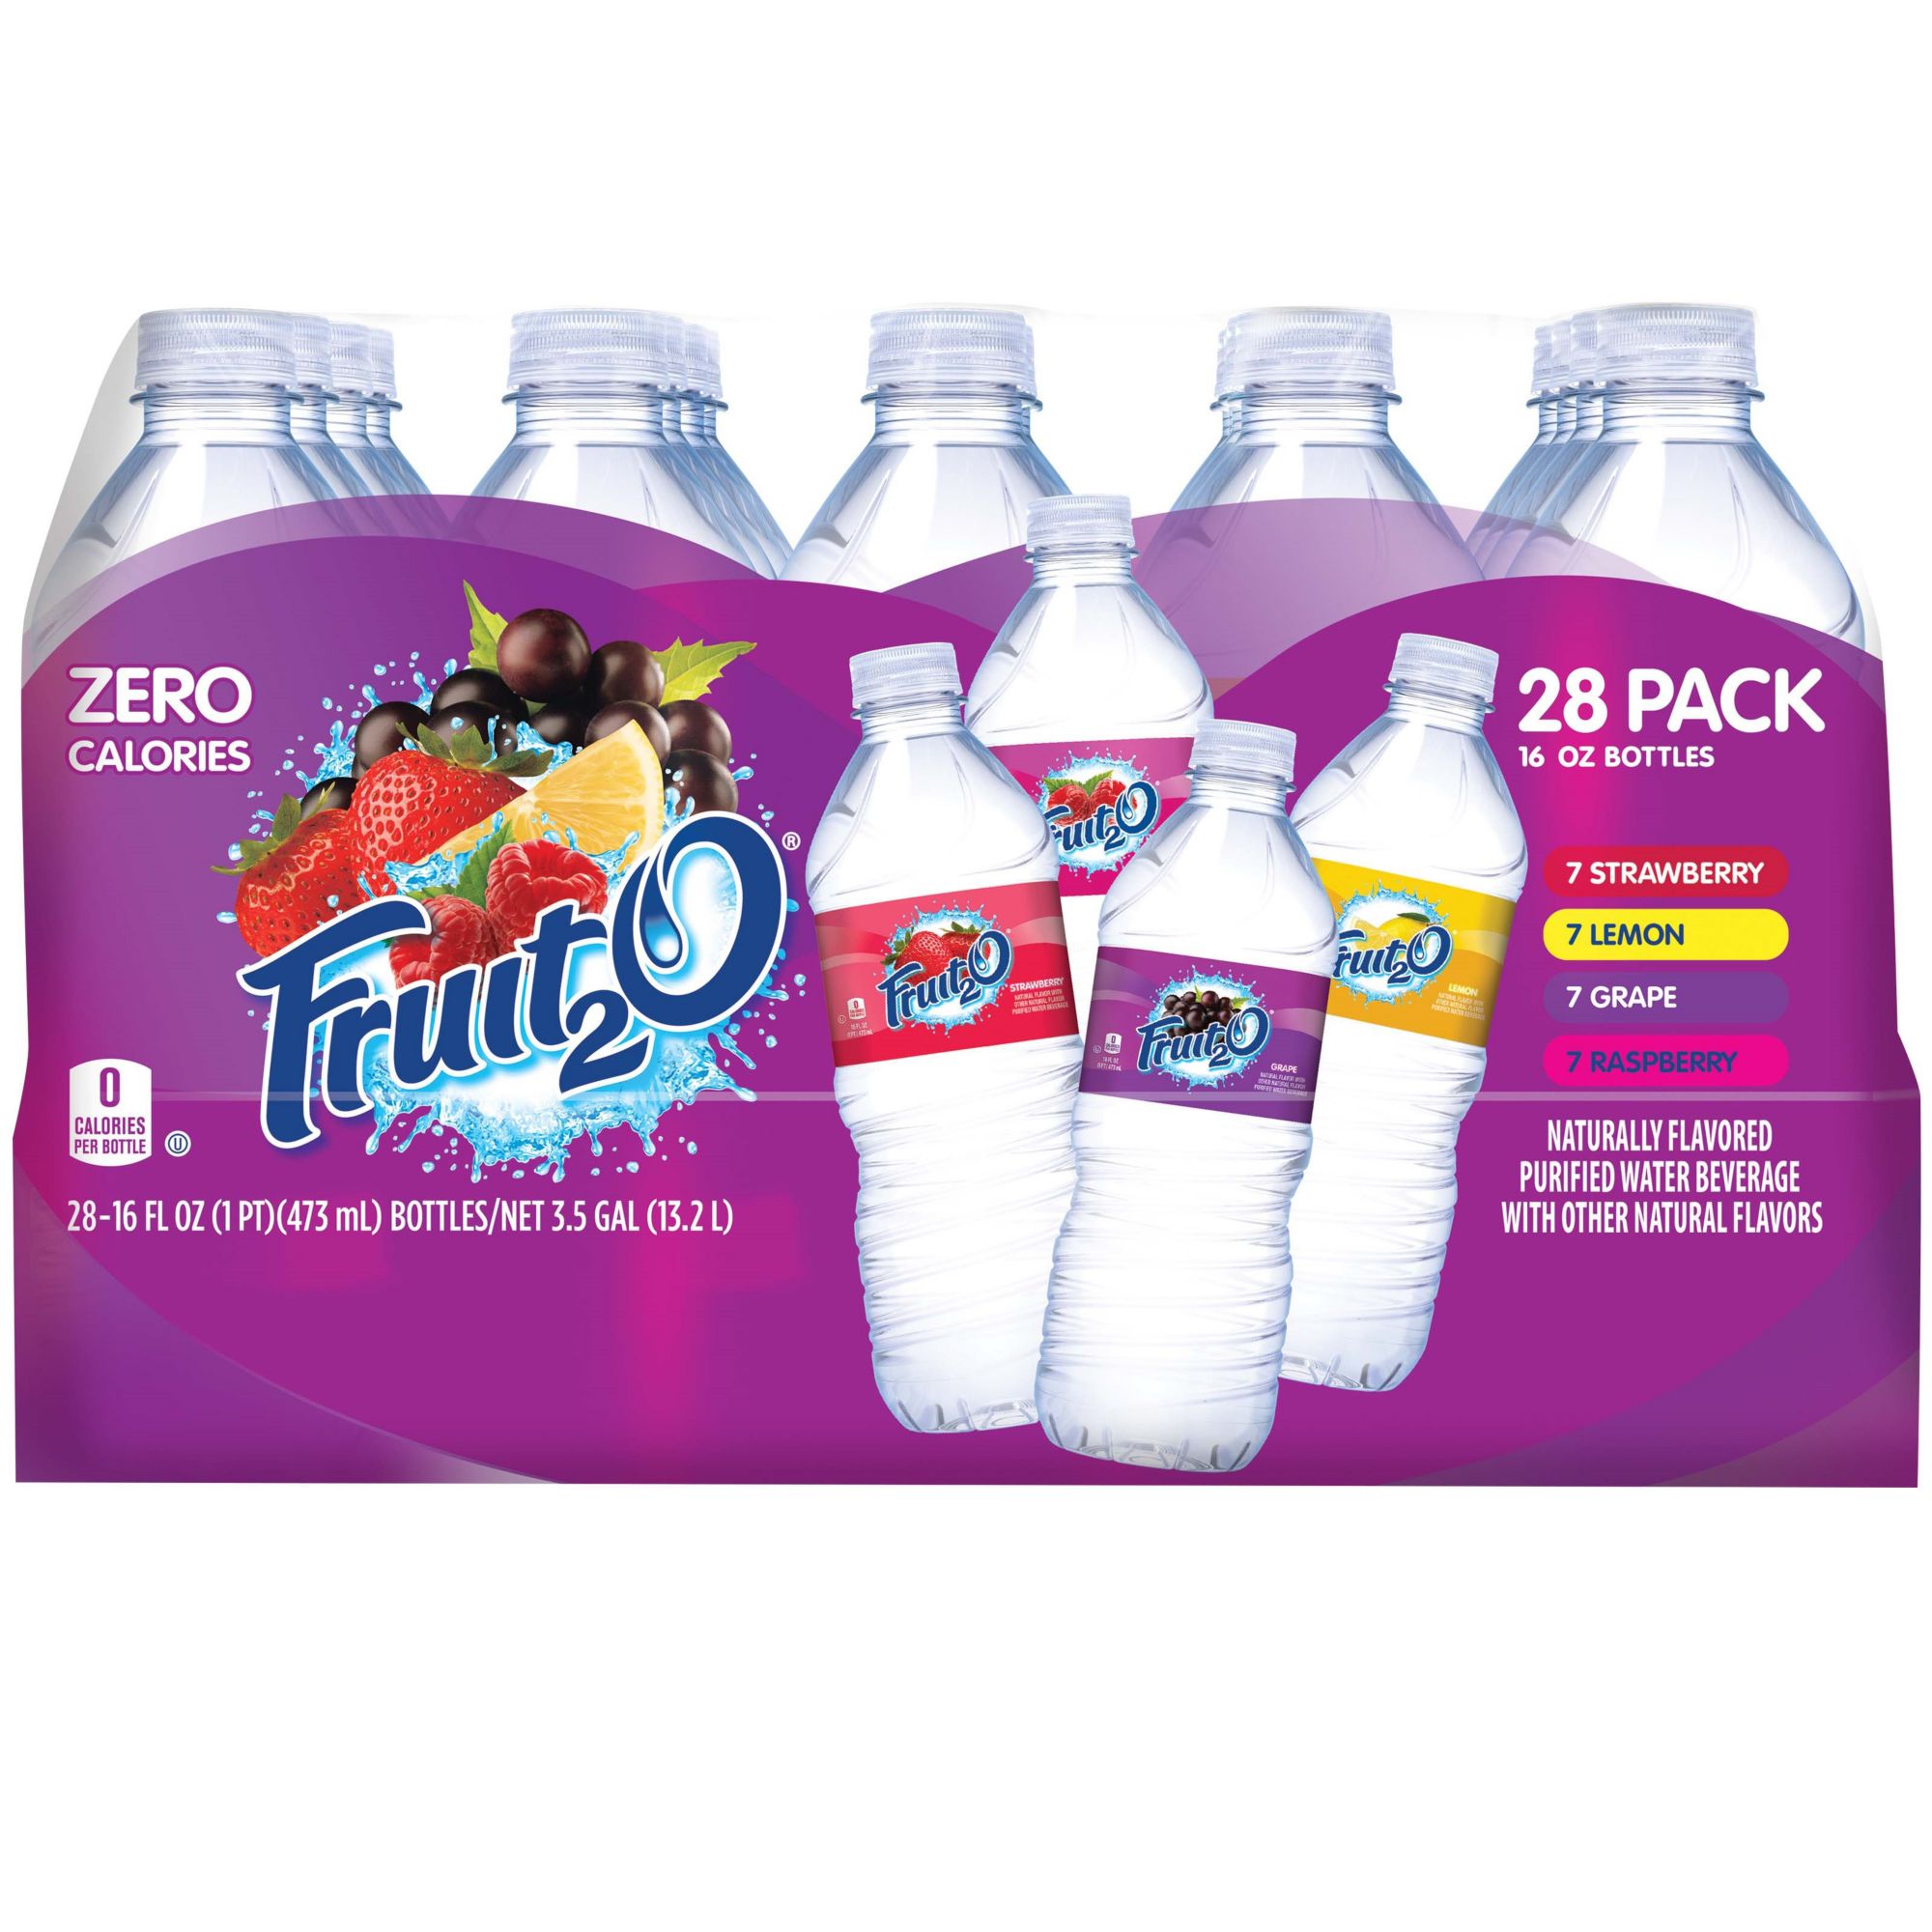 Splash Blast, Raspberry Flavor Water Beverage, 16.9 Fl Oz Plastic